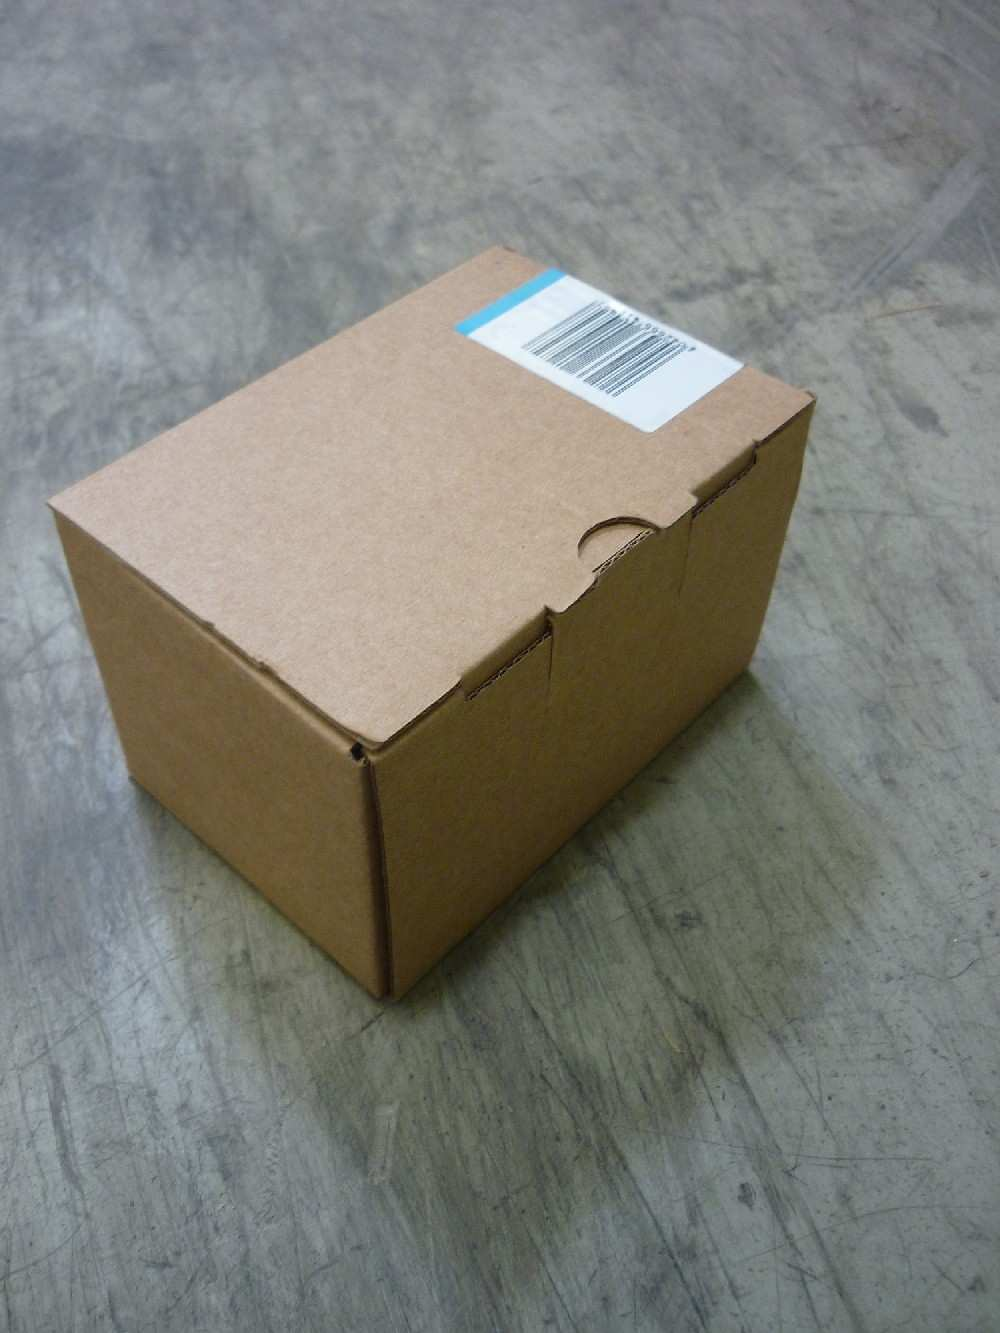 Lieferanten-Artikel-Verpackung 4 Anforderungen" Lieferanten-Artikel-Verpackung" Artikel-Etikett Für eine eindeutige Identifikation des